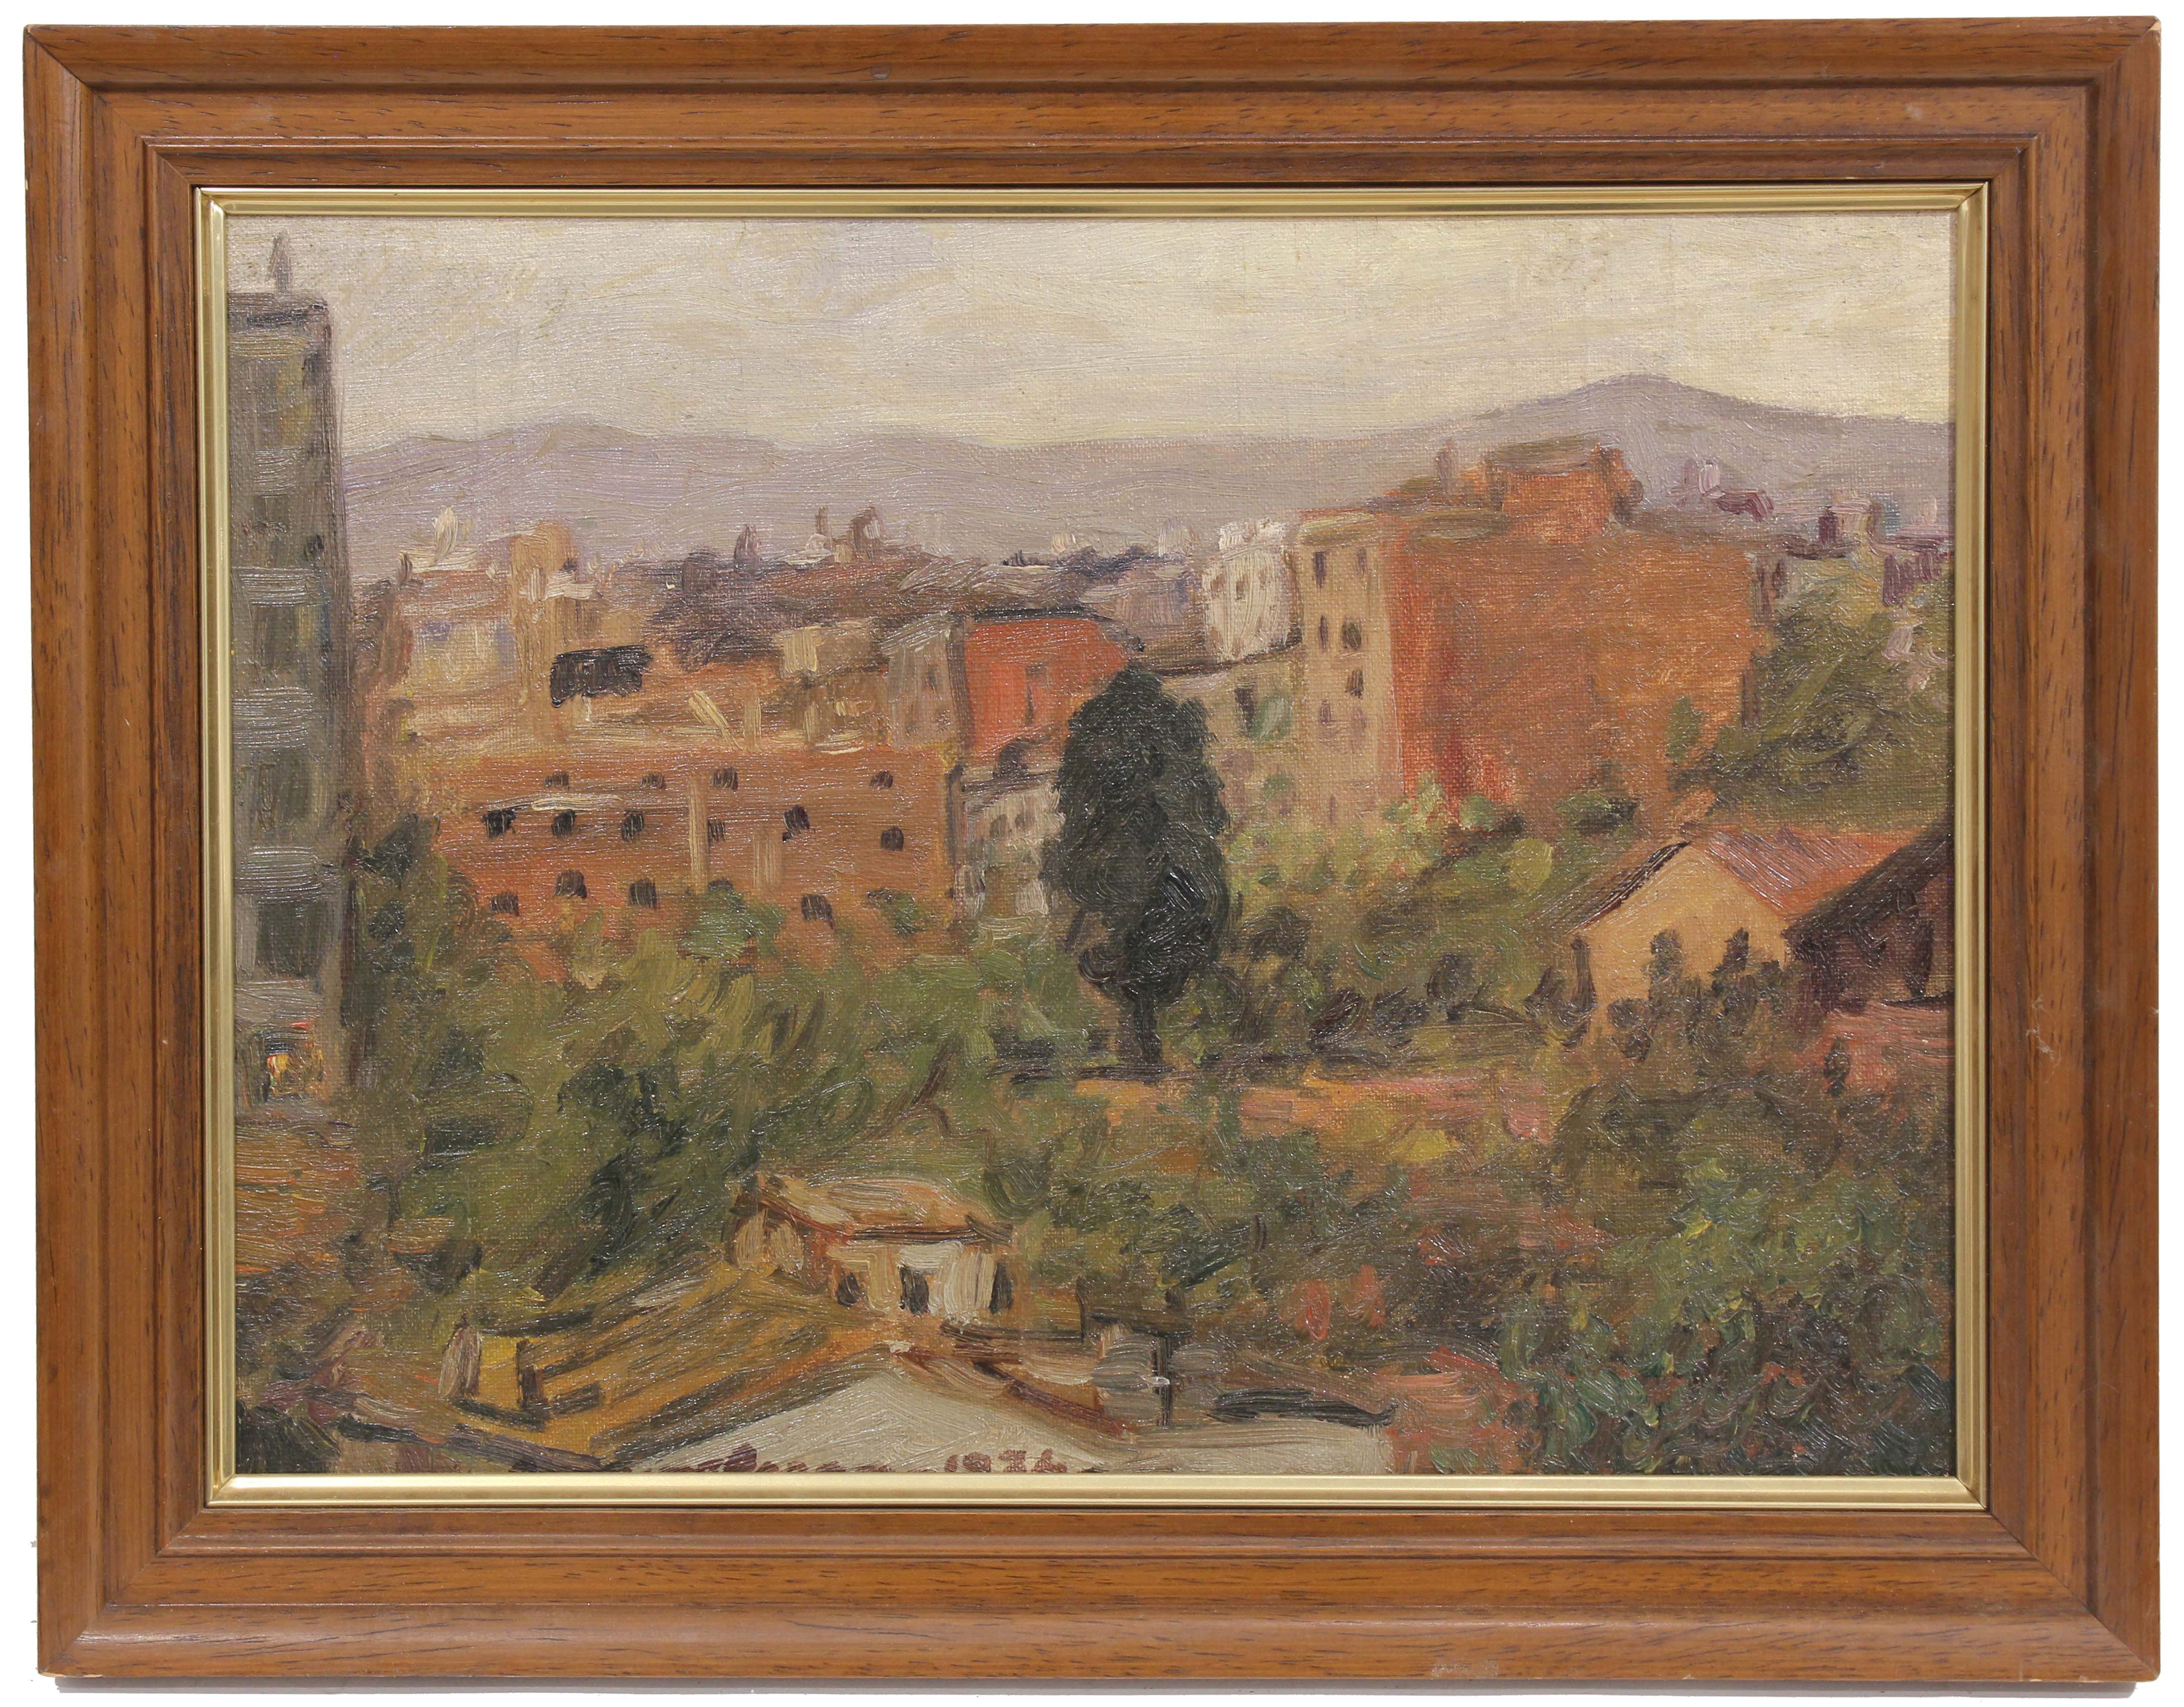 JOAN COMMELERAN CARRERA (1902-1992). "GRACIA", 1934.